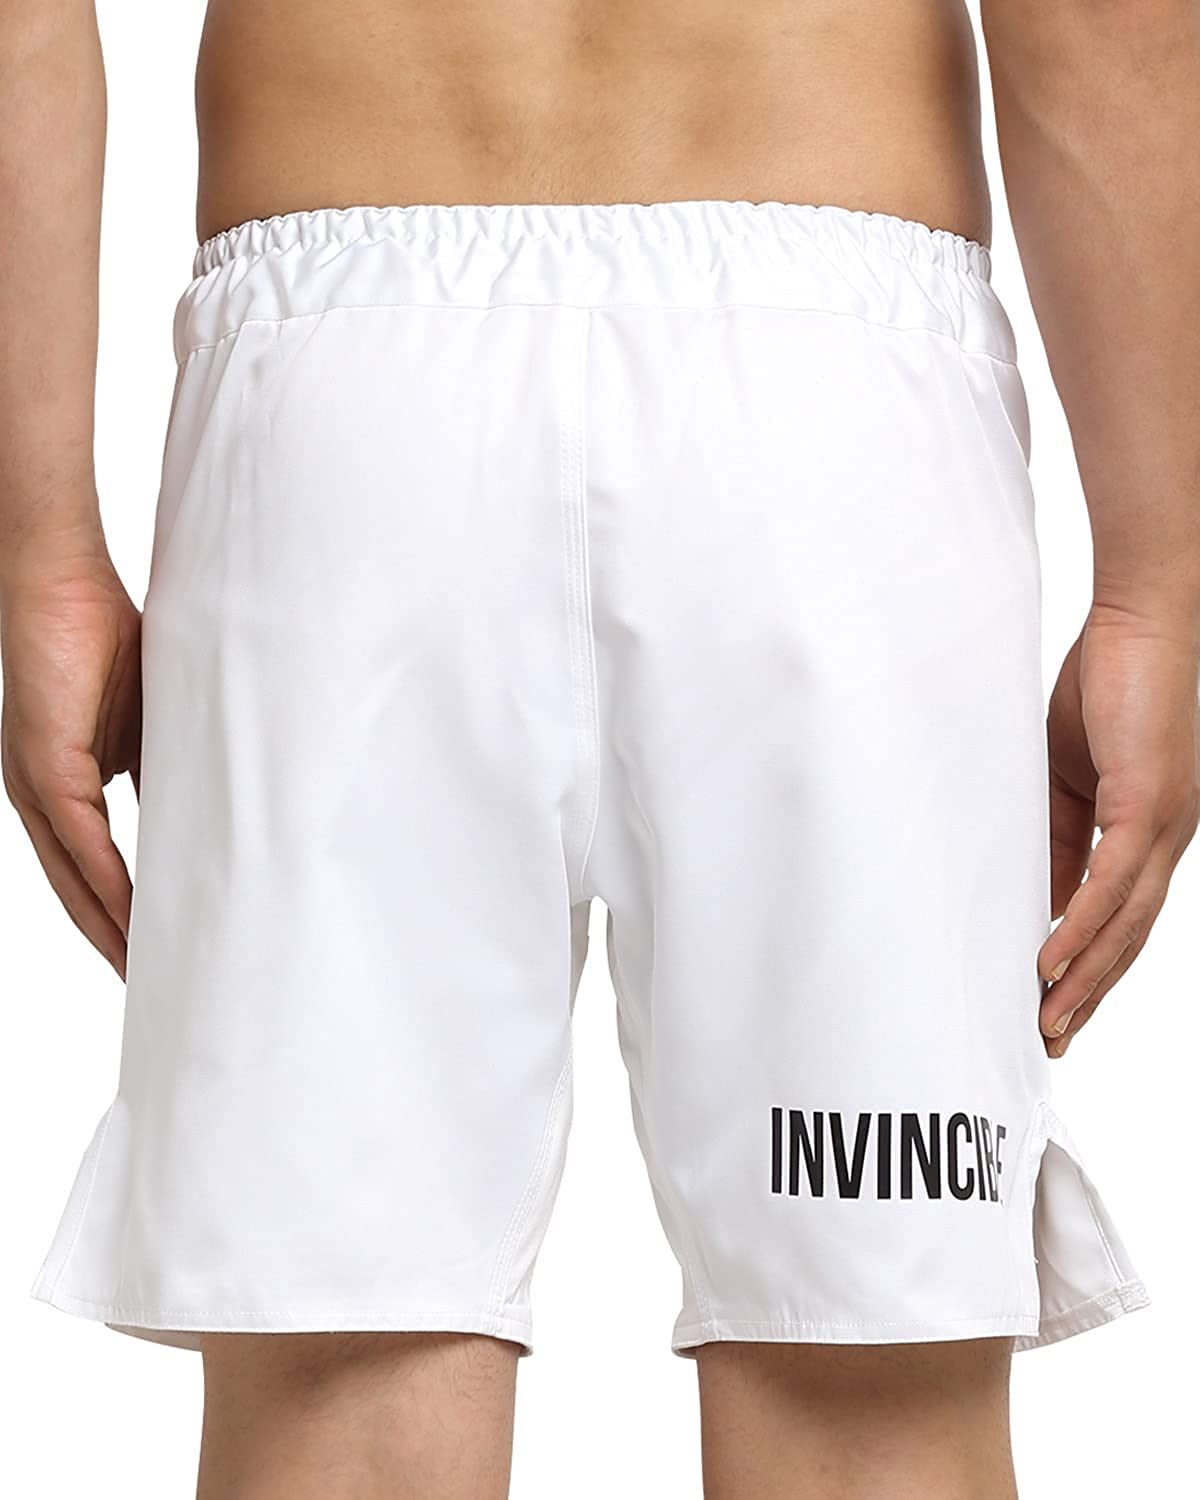 Invincible Men's MMA/Crossfit Shorts